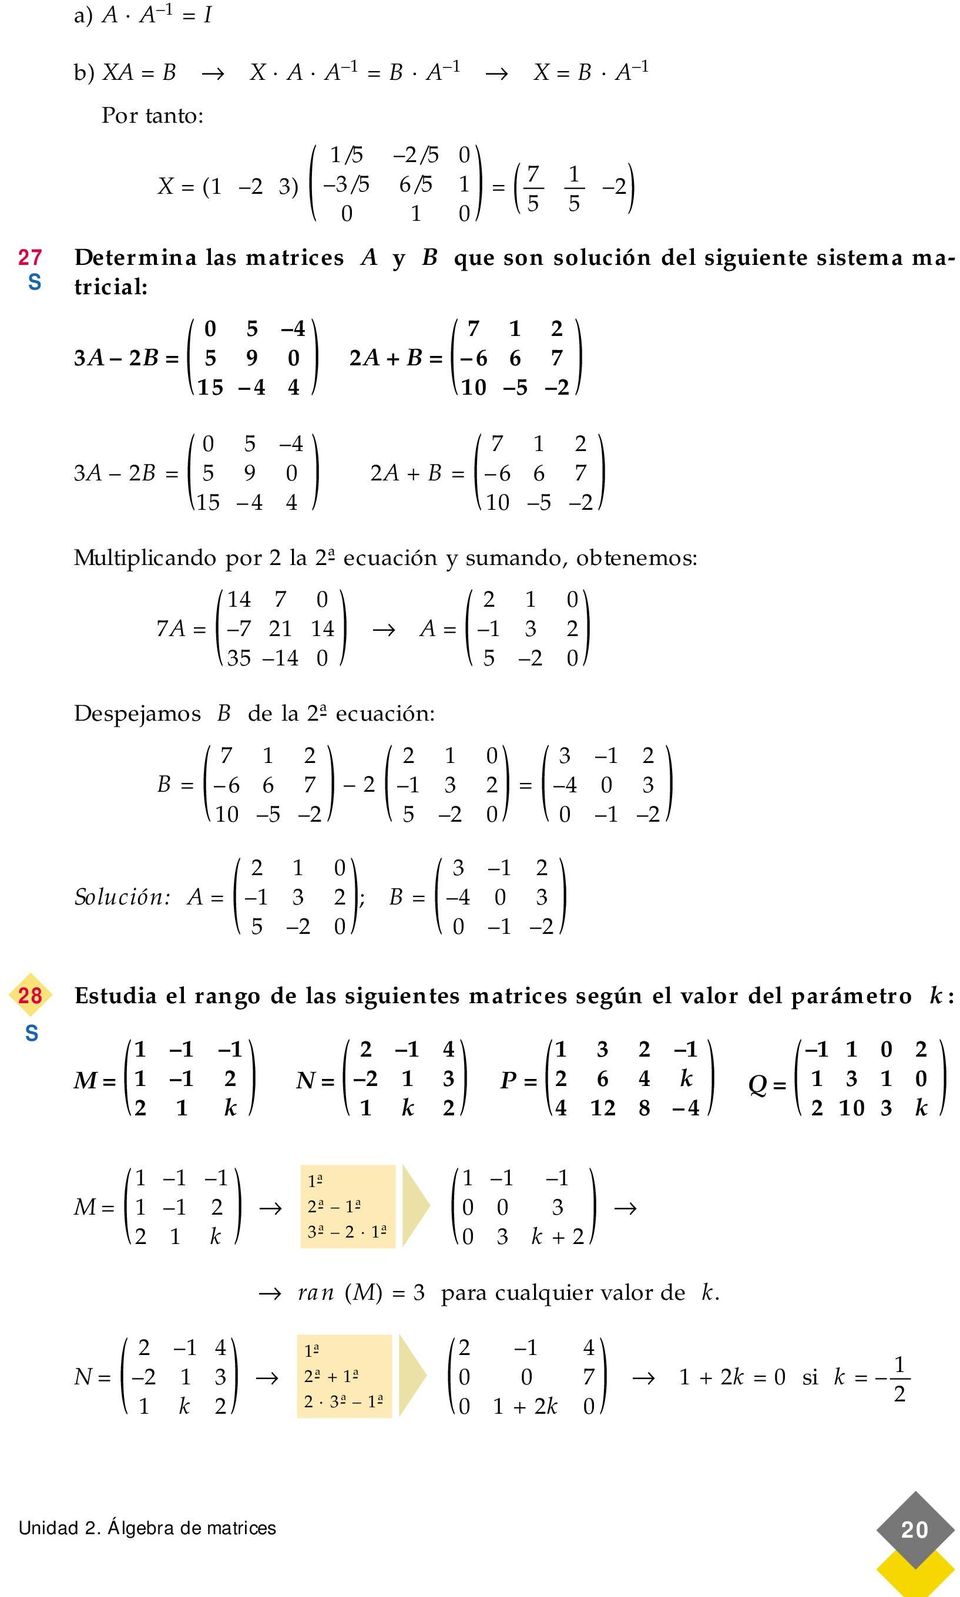 olución: A = 3 ; B = 4 0 3 8 Estudia el rango de las siguientes matrices según el valor del parámetro k : 4 3 0 M = N = 3 P = 6 4 k Q = 3 0 k k M = 4 ran M = 3 para cualquier